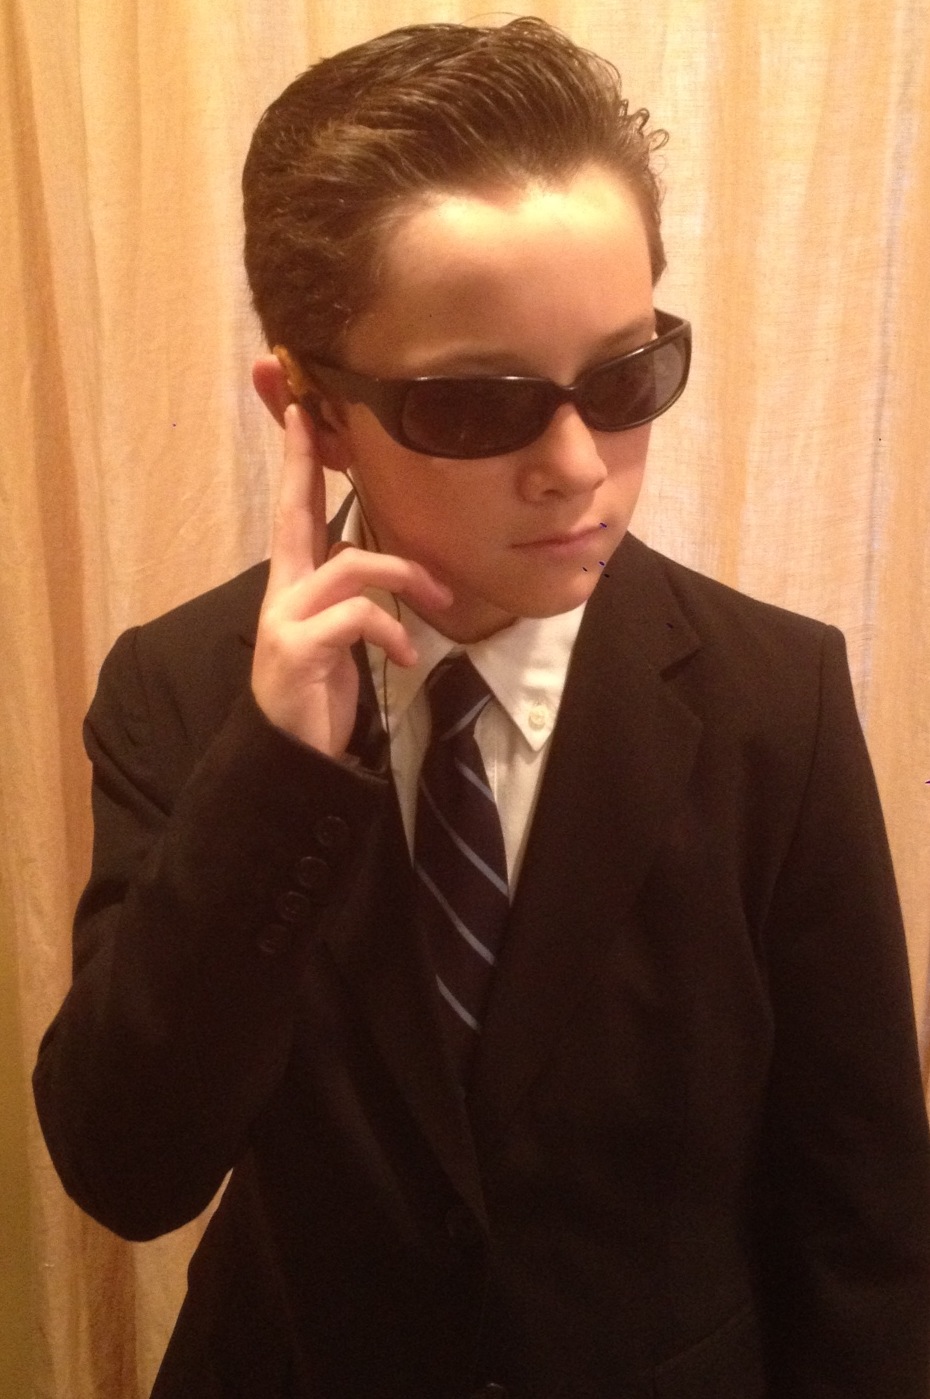 Secret Service Agent Griffin Cleveland